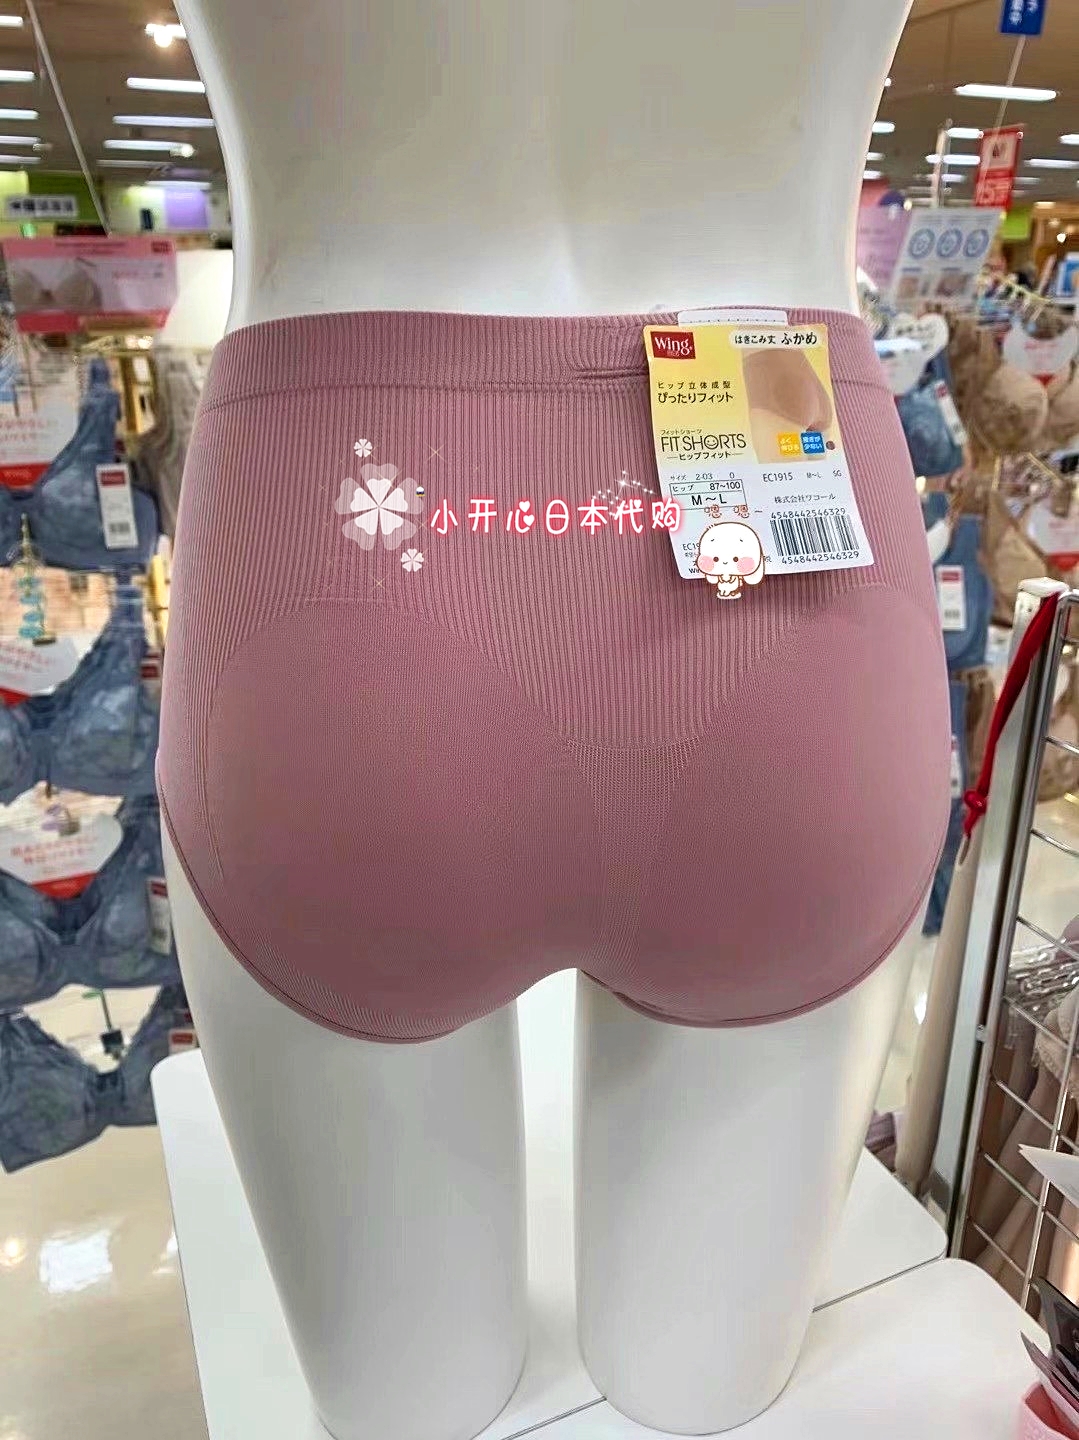 现货包邮  日本采购 华歌尔wing系列高腰收腹提臀女士塑形内裤